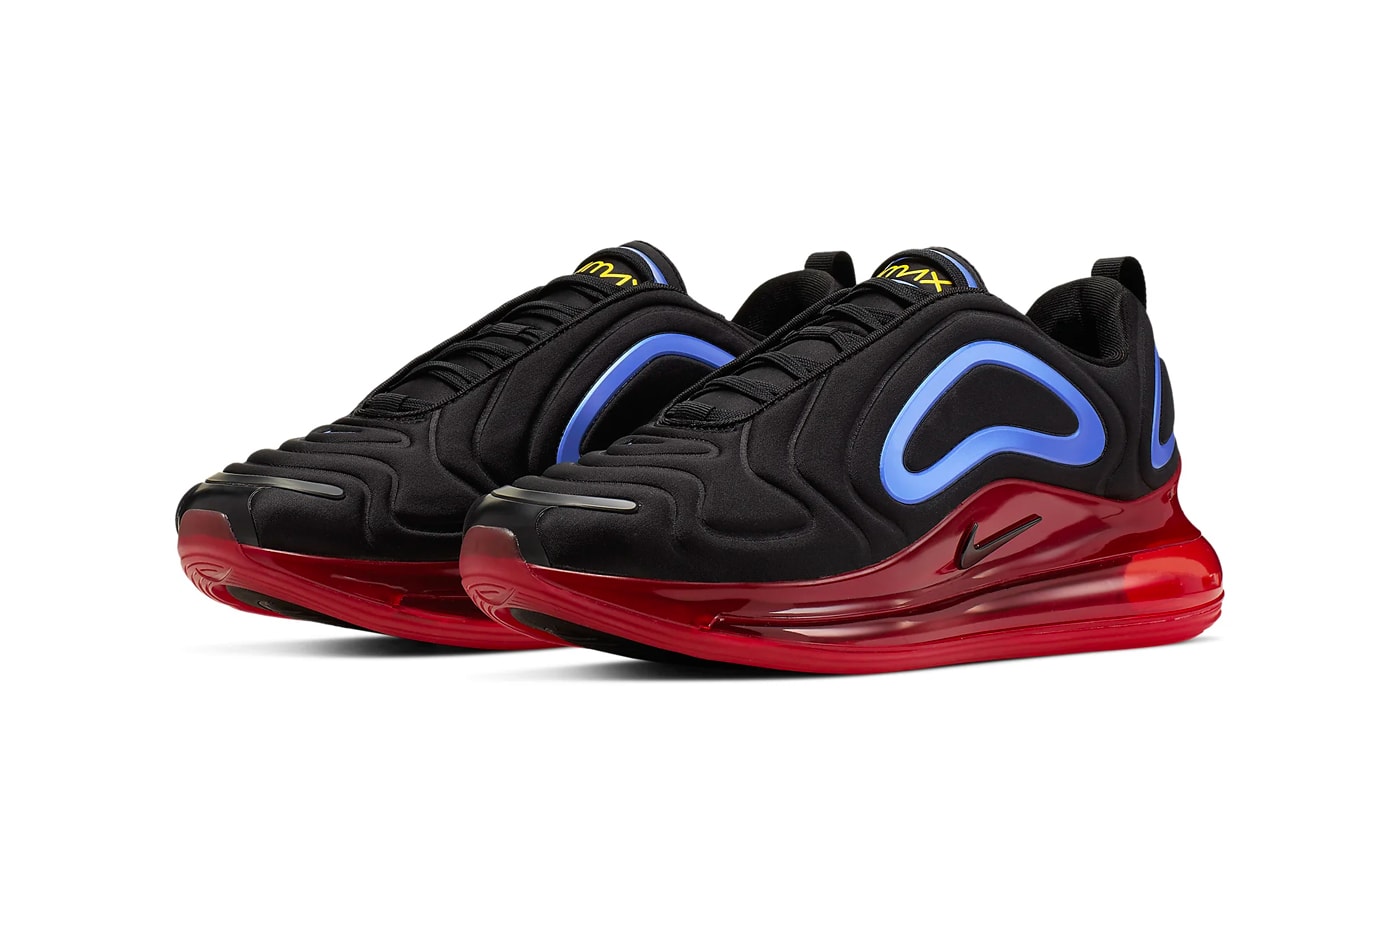 ナイキより原色を巧みに使用したエアマックス720の新色モデルが登場 Nike Air Max 720 Primary Colors Release Info black hyper royal challenge red university gold sneakers shoes 